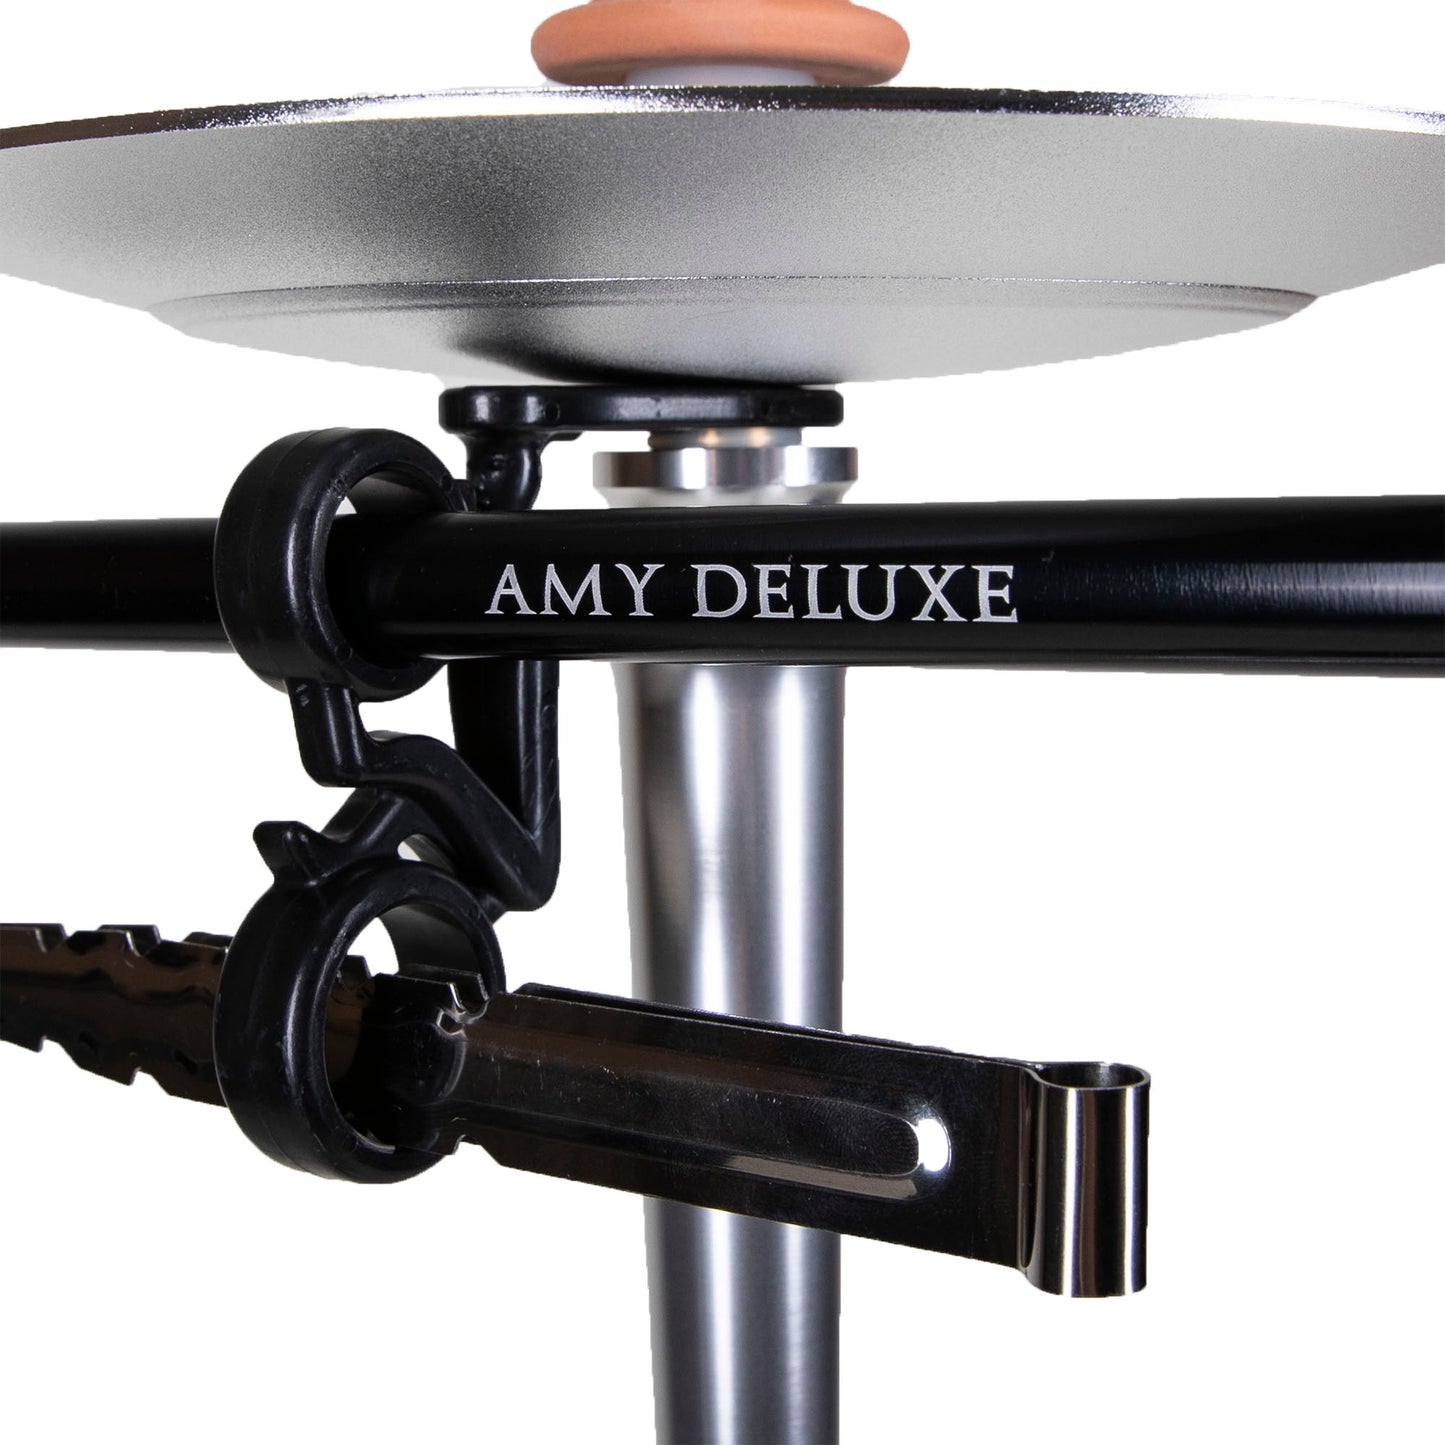 Amy Deluxe Alu Deluxe